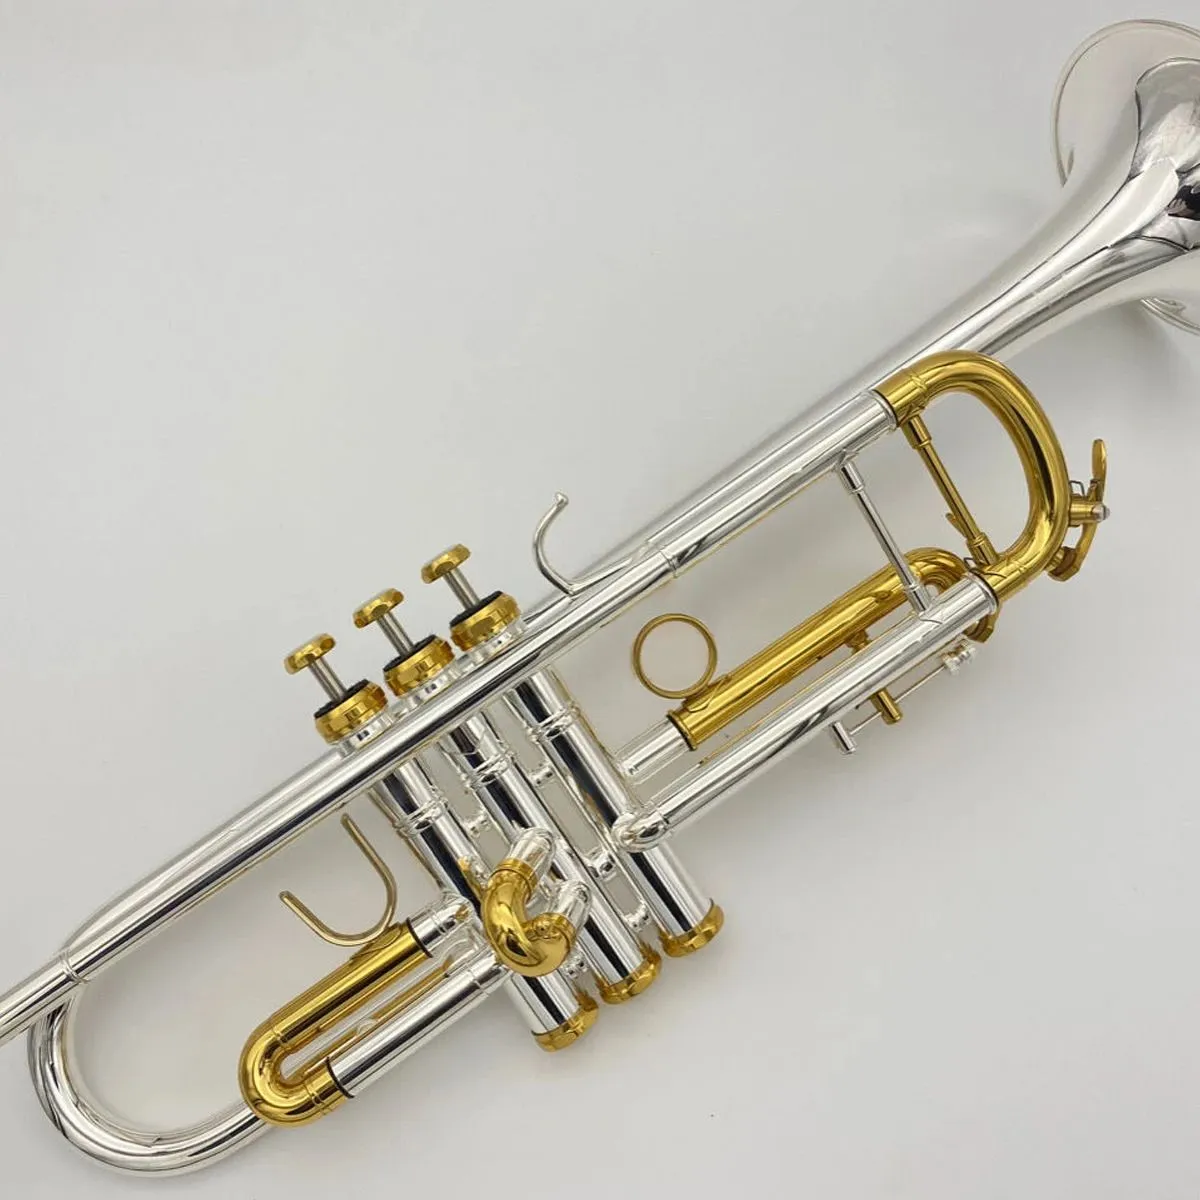 미국 브랜드 전문 트럼펫 악기 초보자는 은도금 금도금 버튼 리미터 3 톤 트럼펫 연주